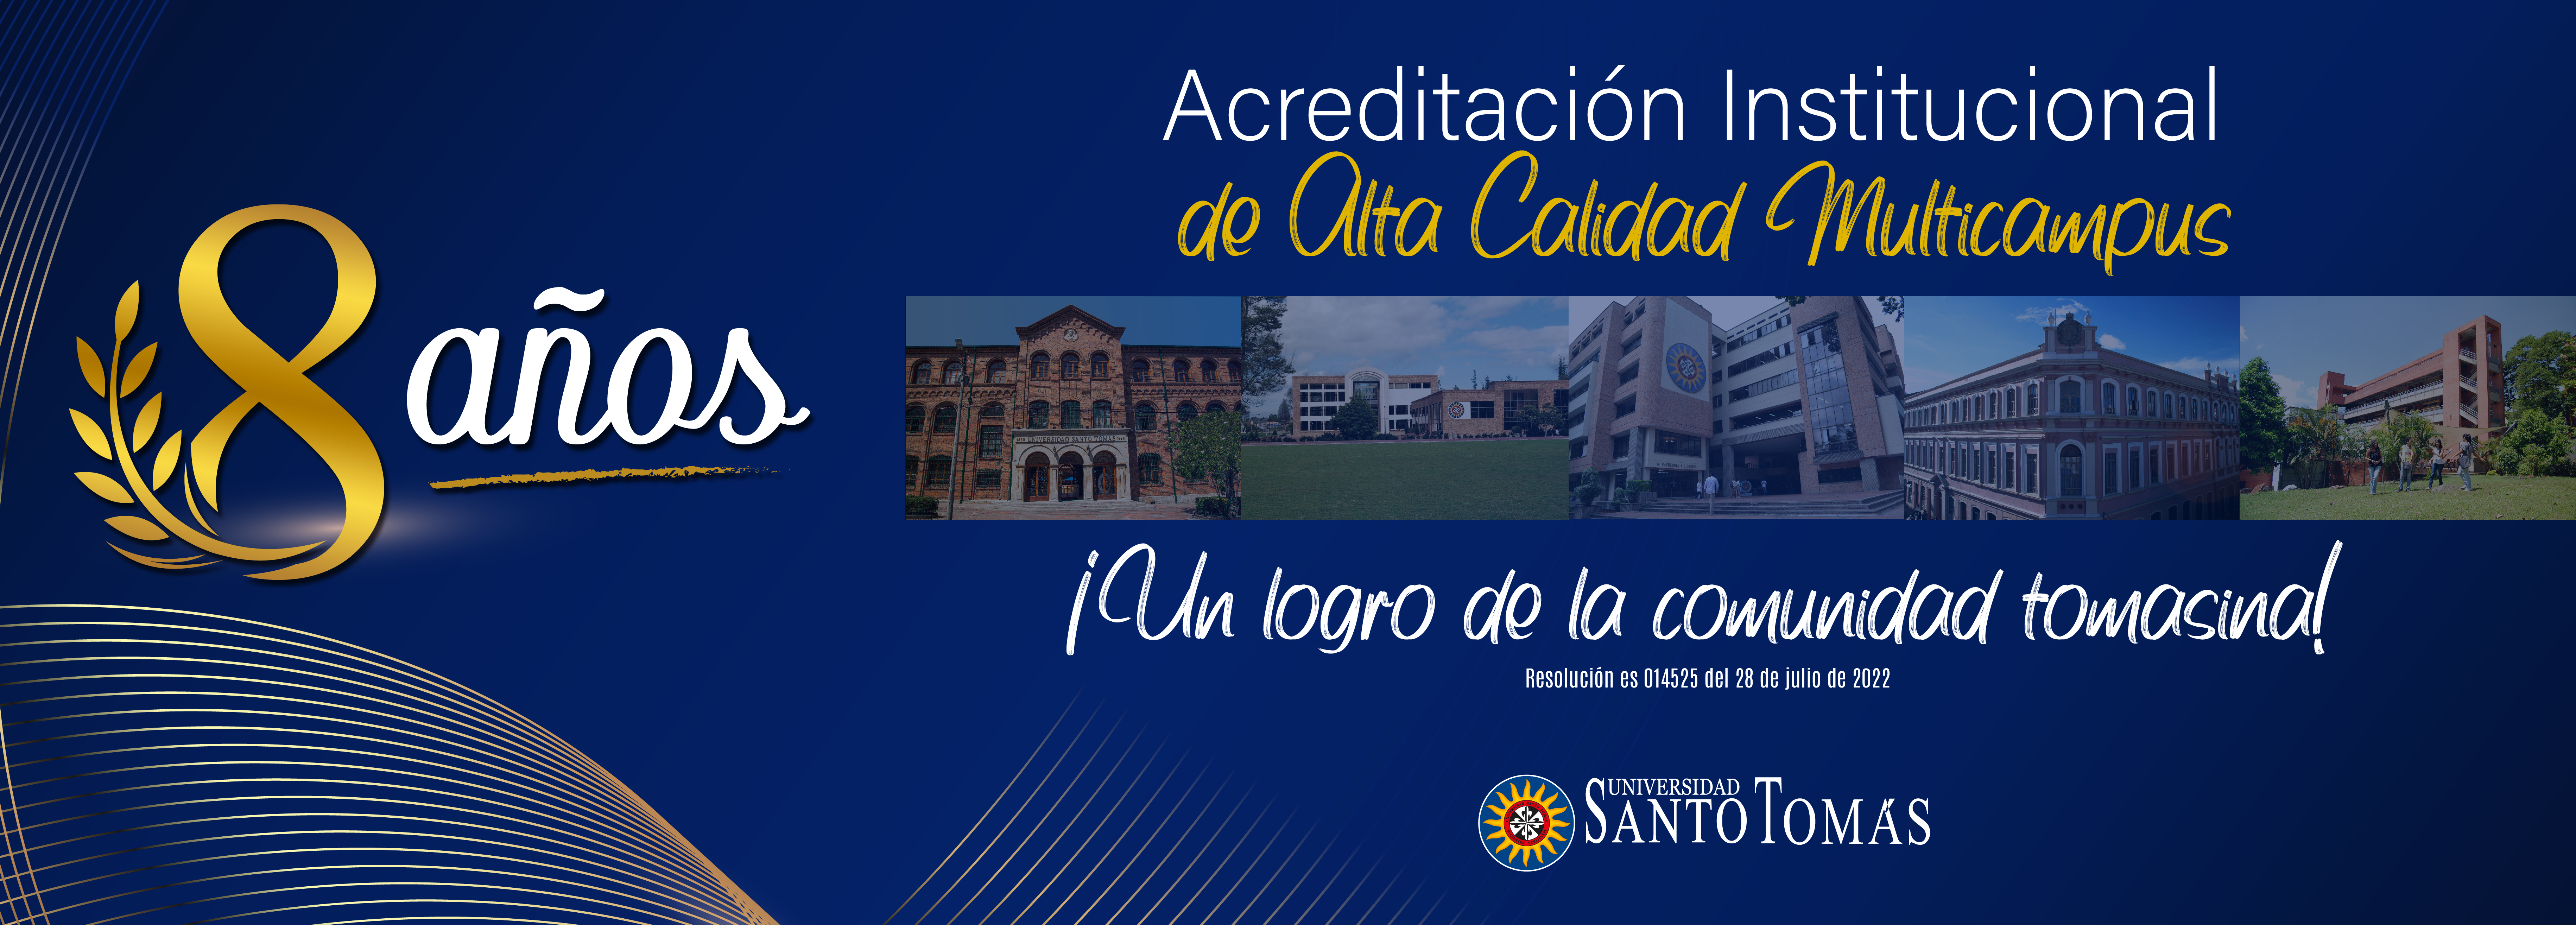 Universidad Santo Tomás recibe la renovación de la Acreditación Institucional de Alta Calidad Multicampus por 8 años